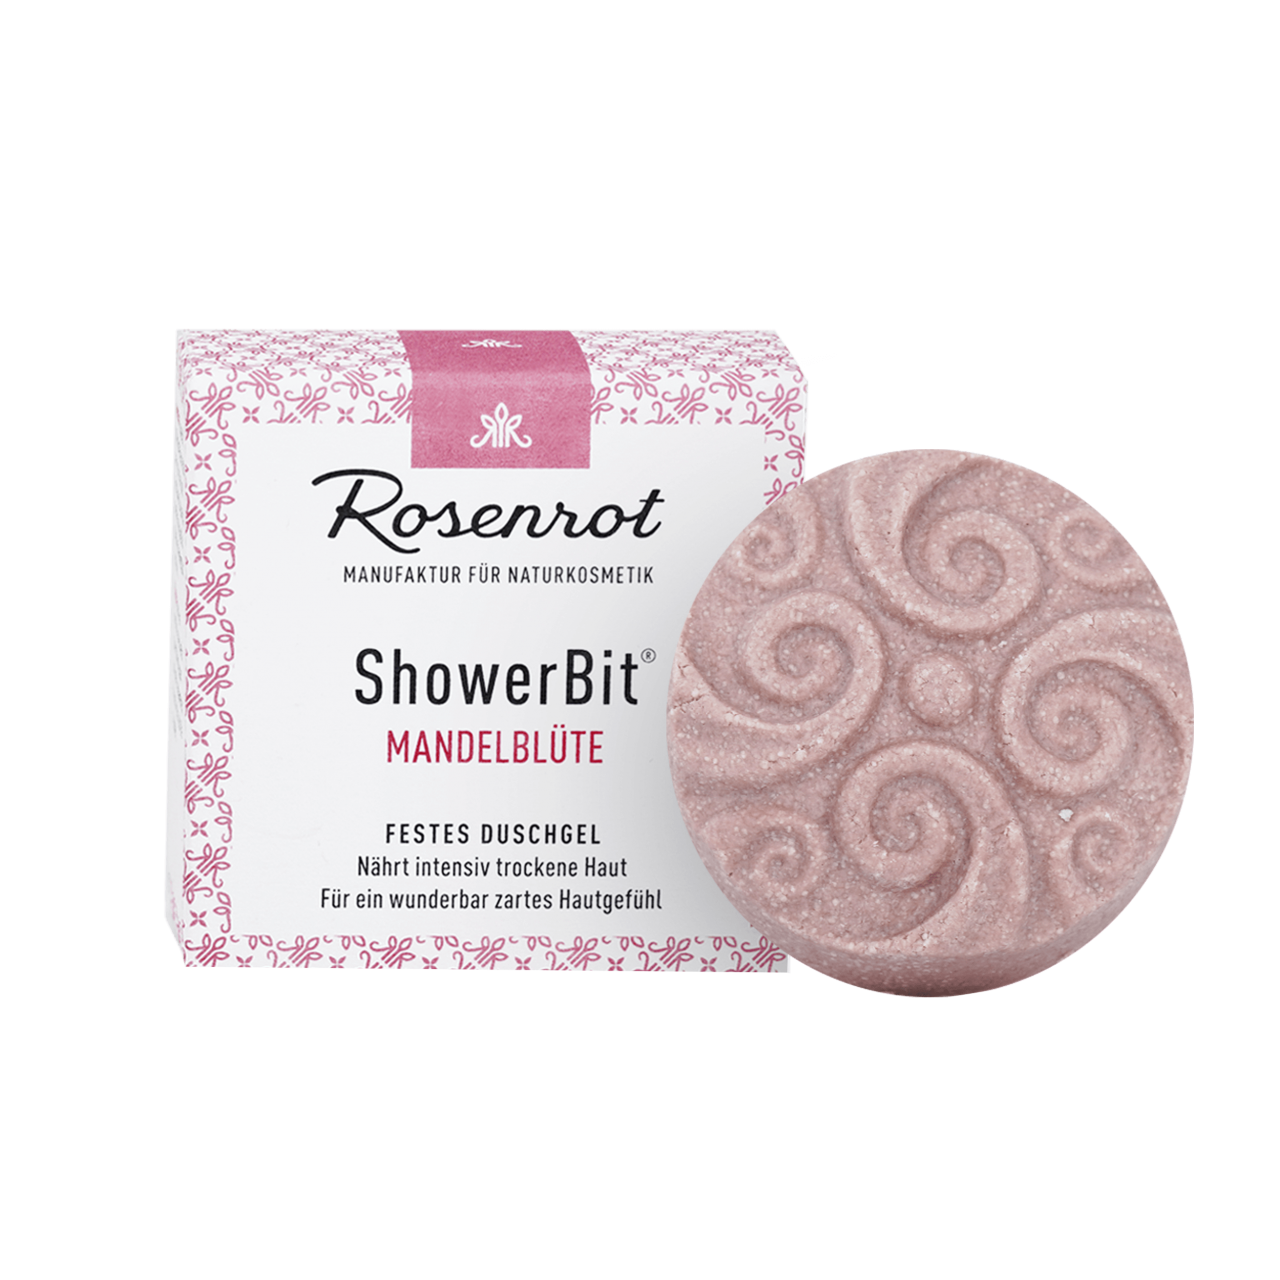 ShowerBit® Mandelblüte